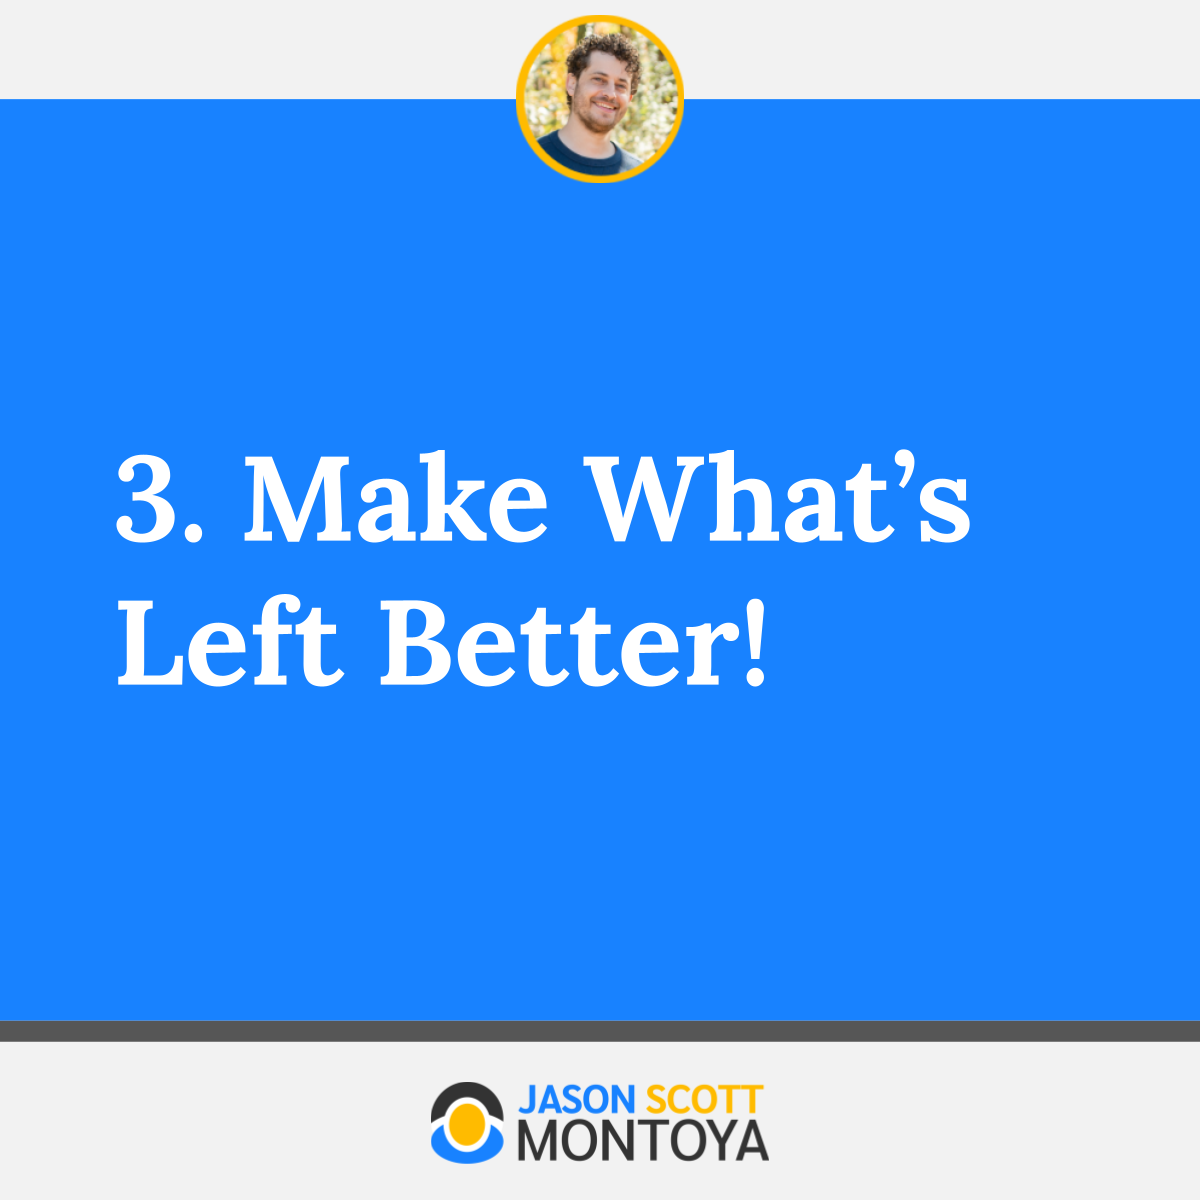 3. Make What’s Left Better!